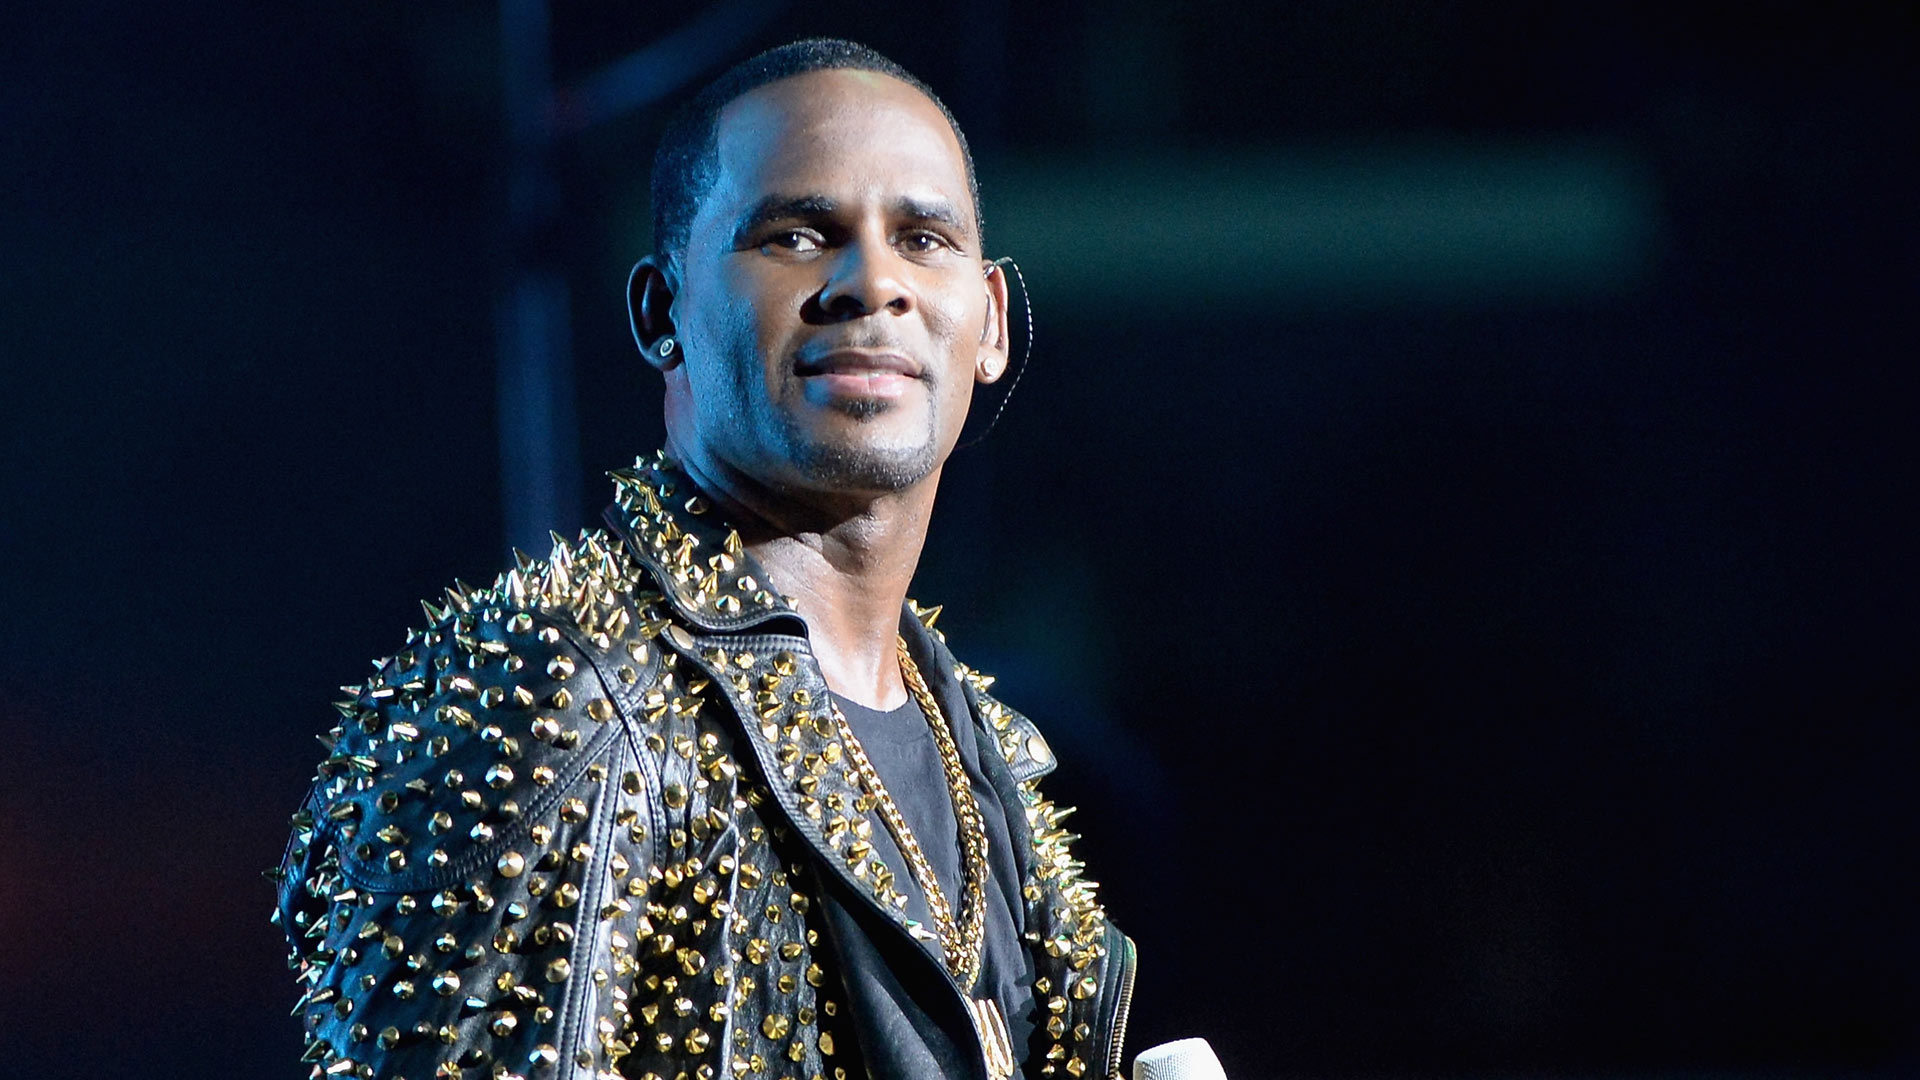 El cantante R. Kelly es acusado de 10 cargos de abuso sexual